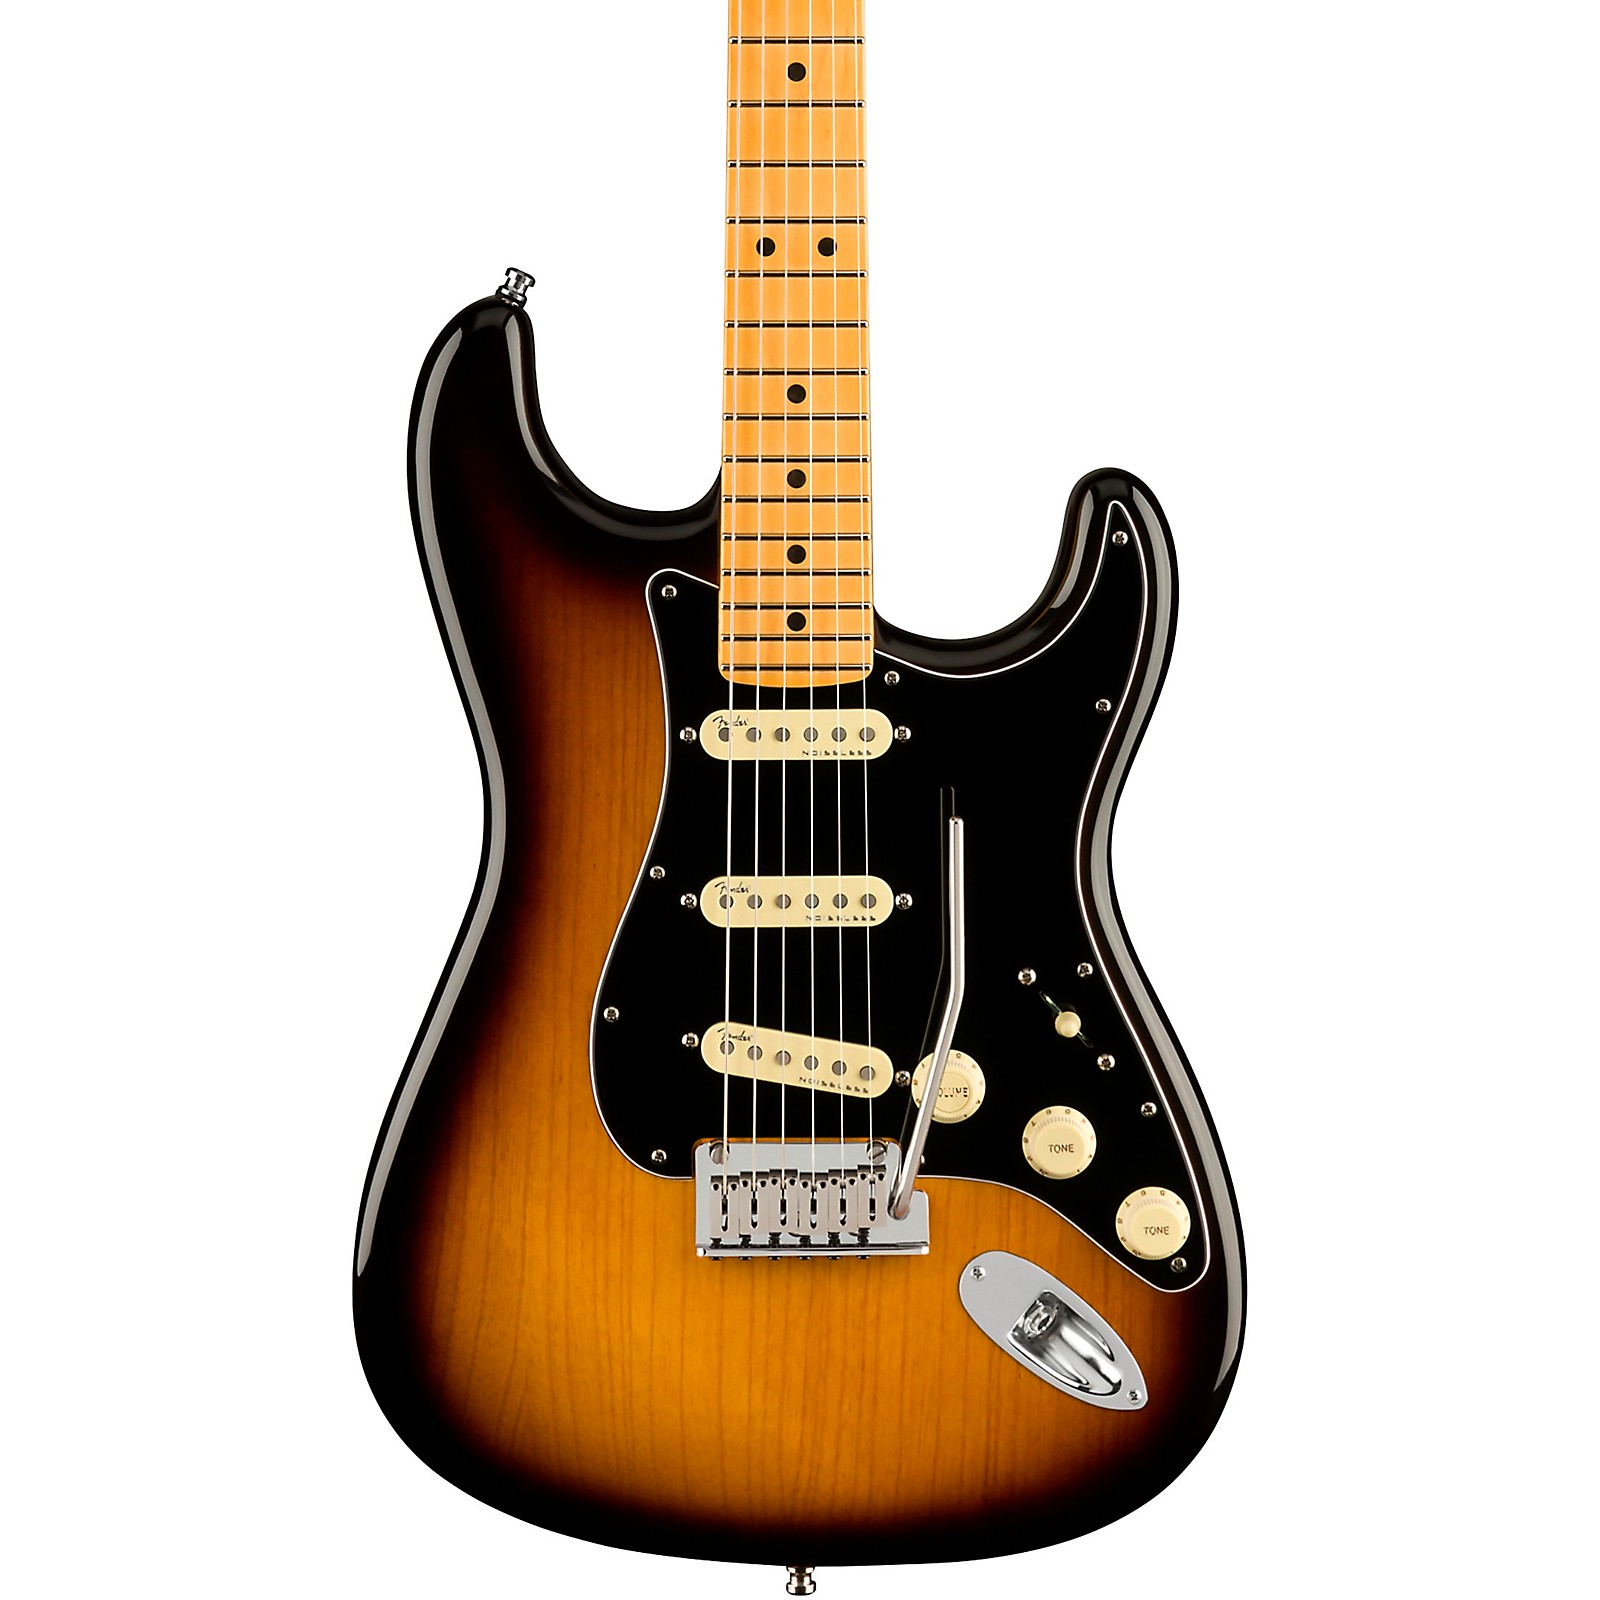 Fender Ultra Luxe Stratocaster Maple Fingerboard Plasma Red Burst -  Willcutt Guitars